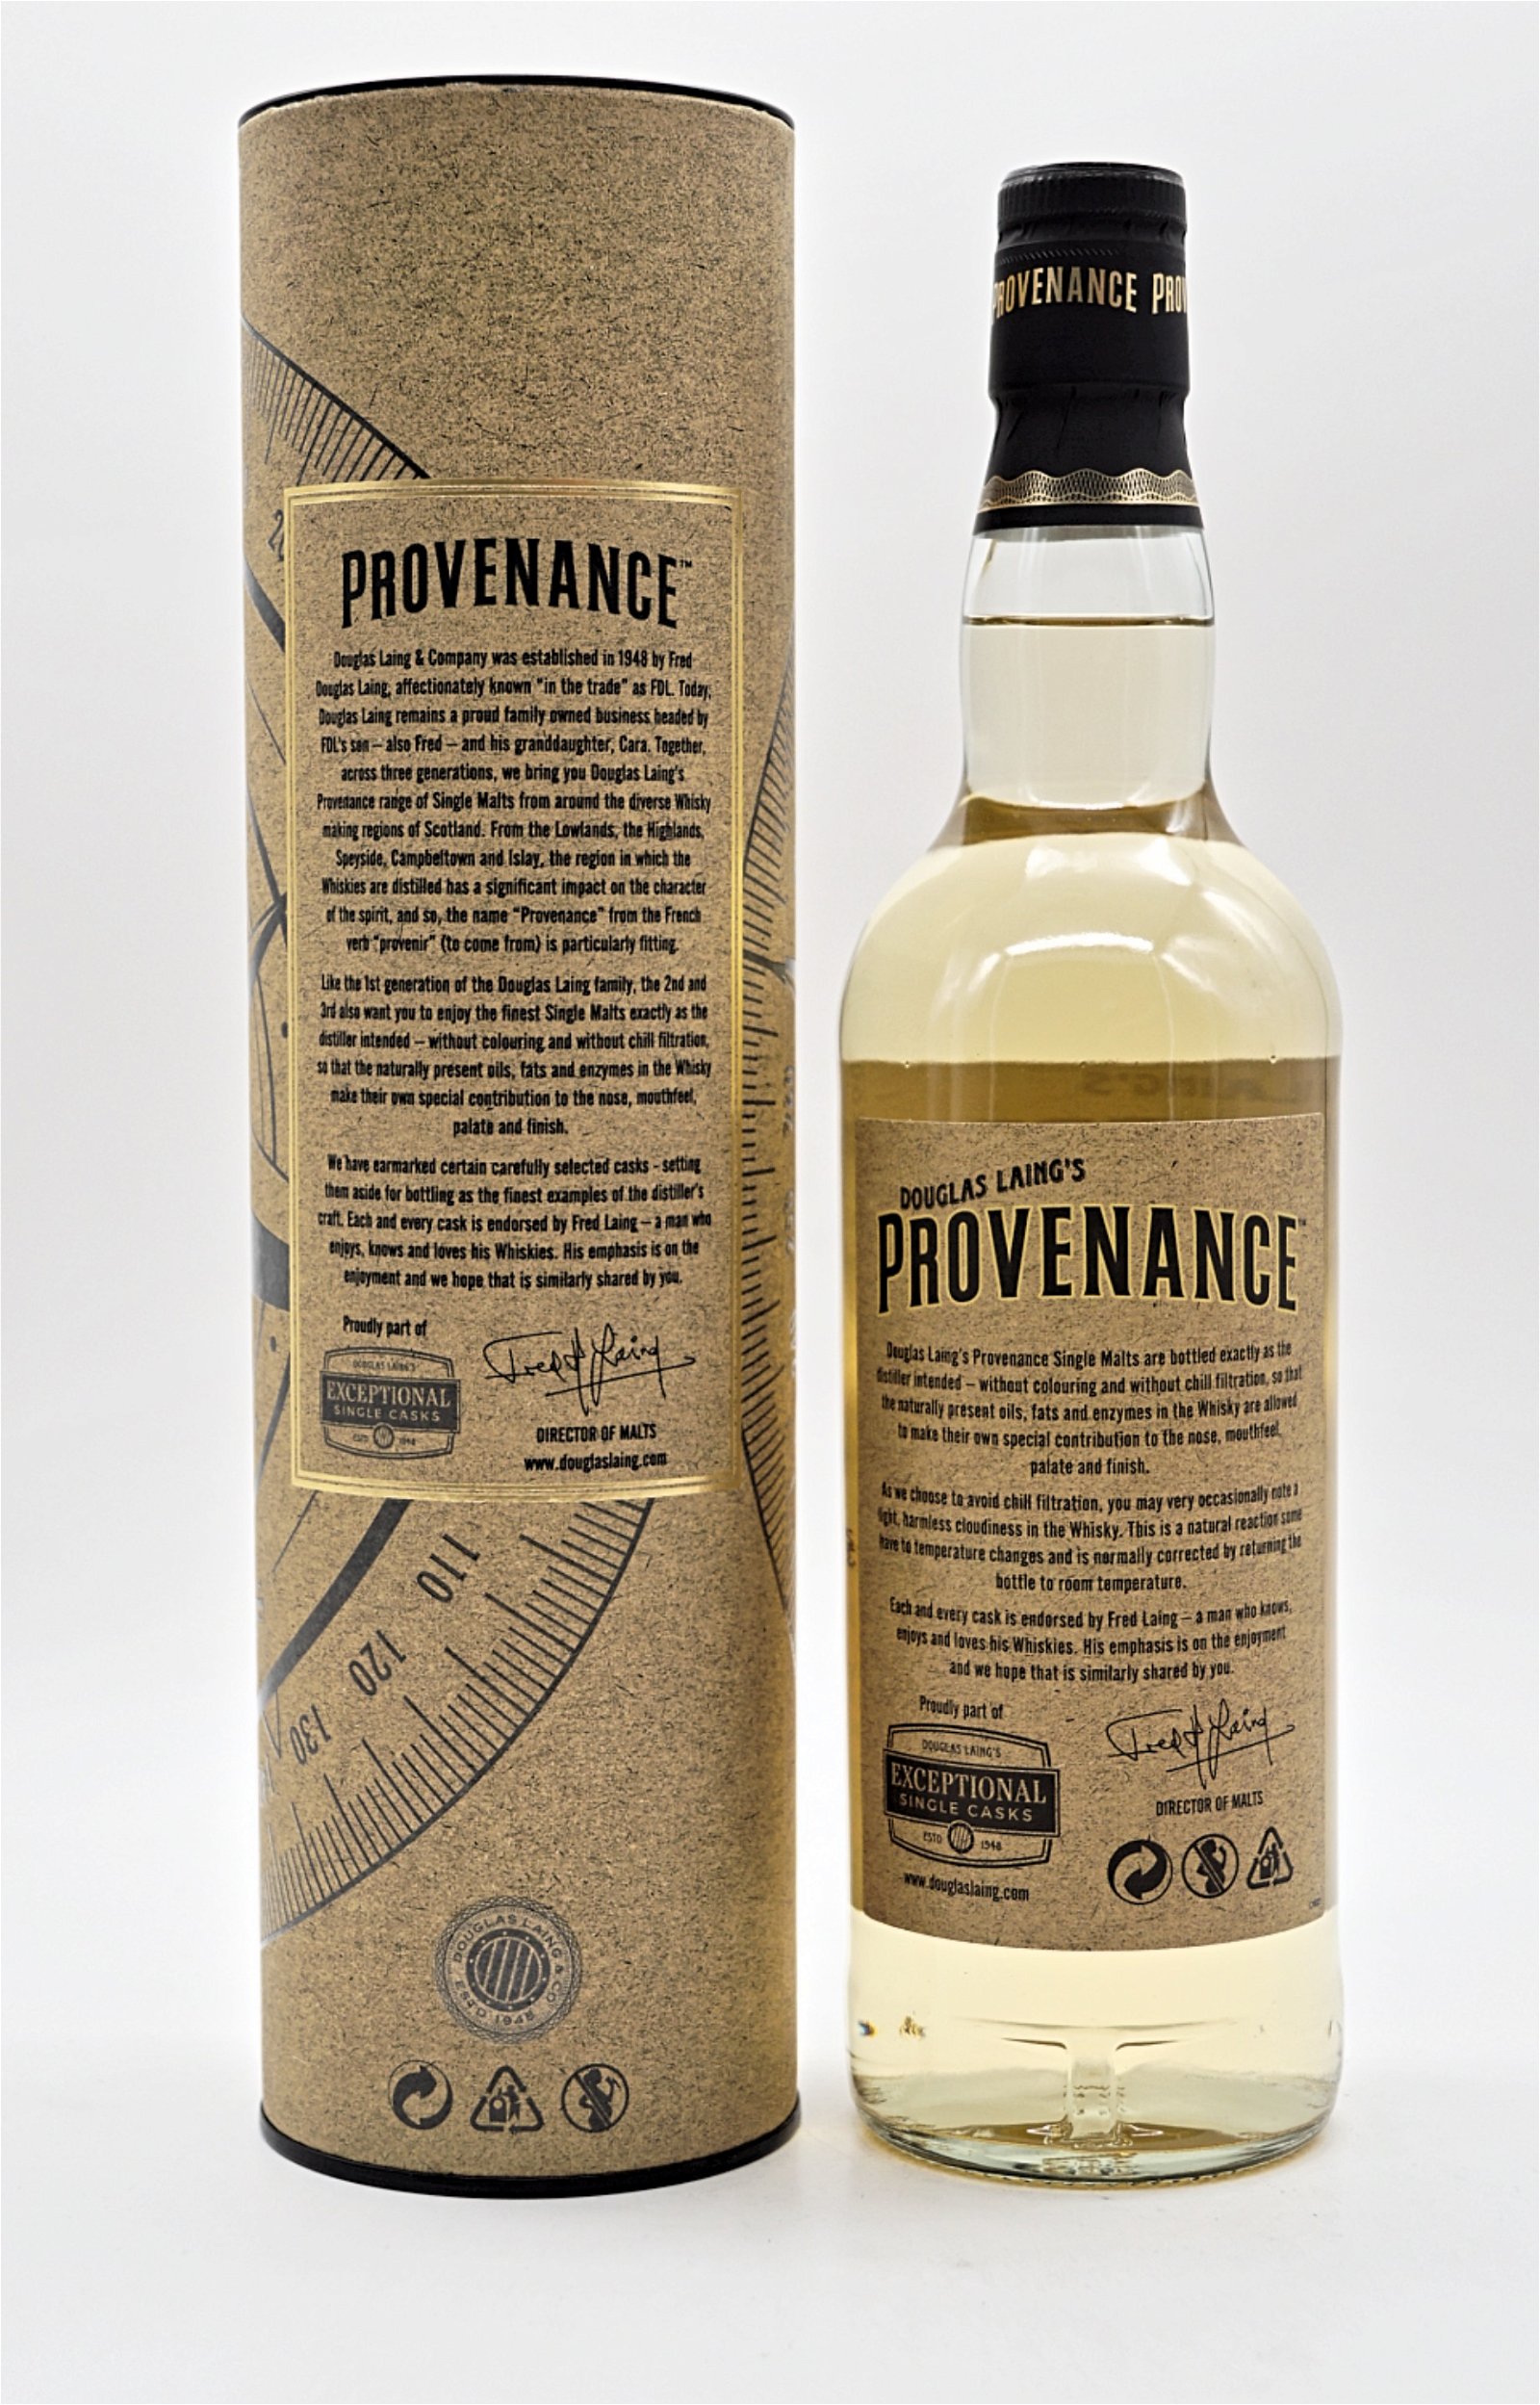 Provenance Speyburn Distillery 10 Jahre 2007/2017 359 Fl. Single Cask Single Malt Scotch Whisky